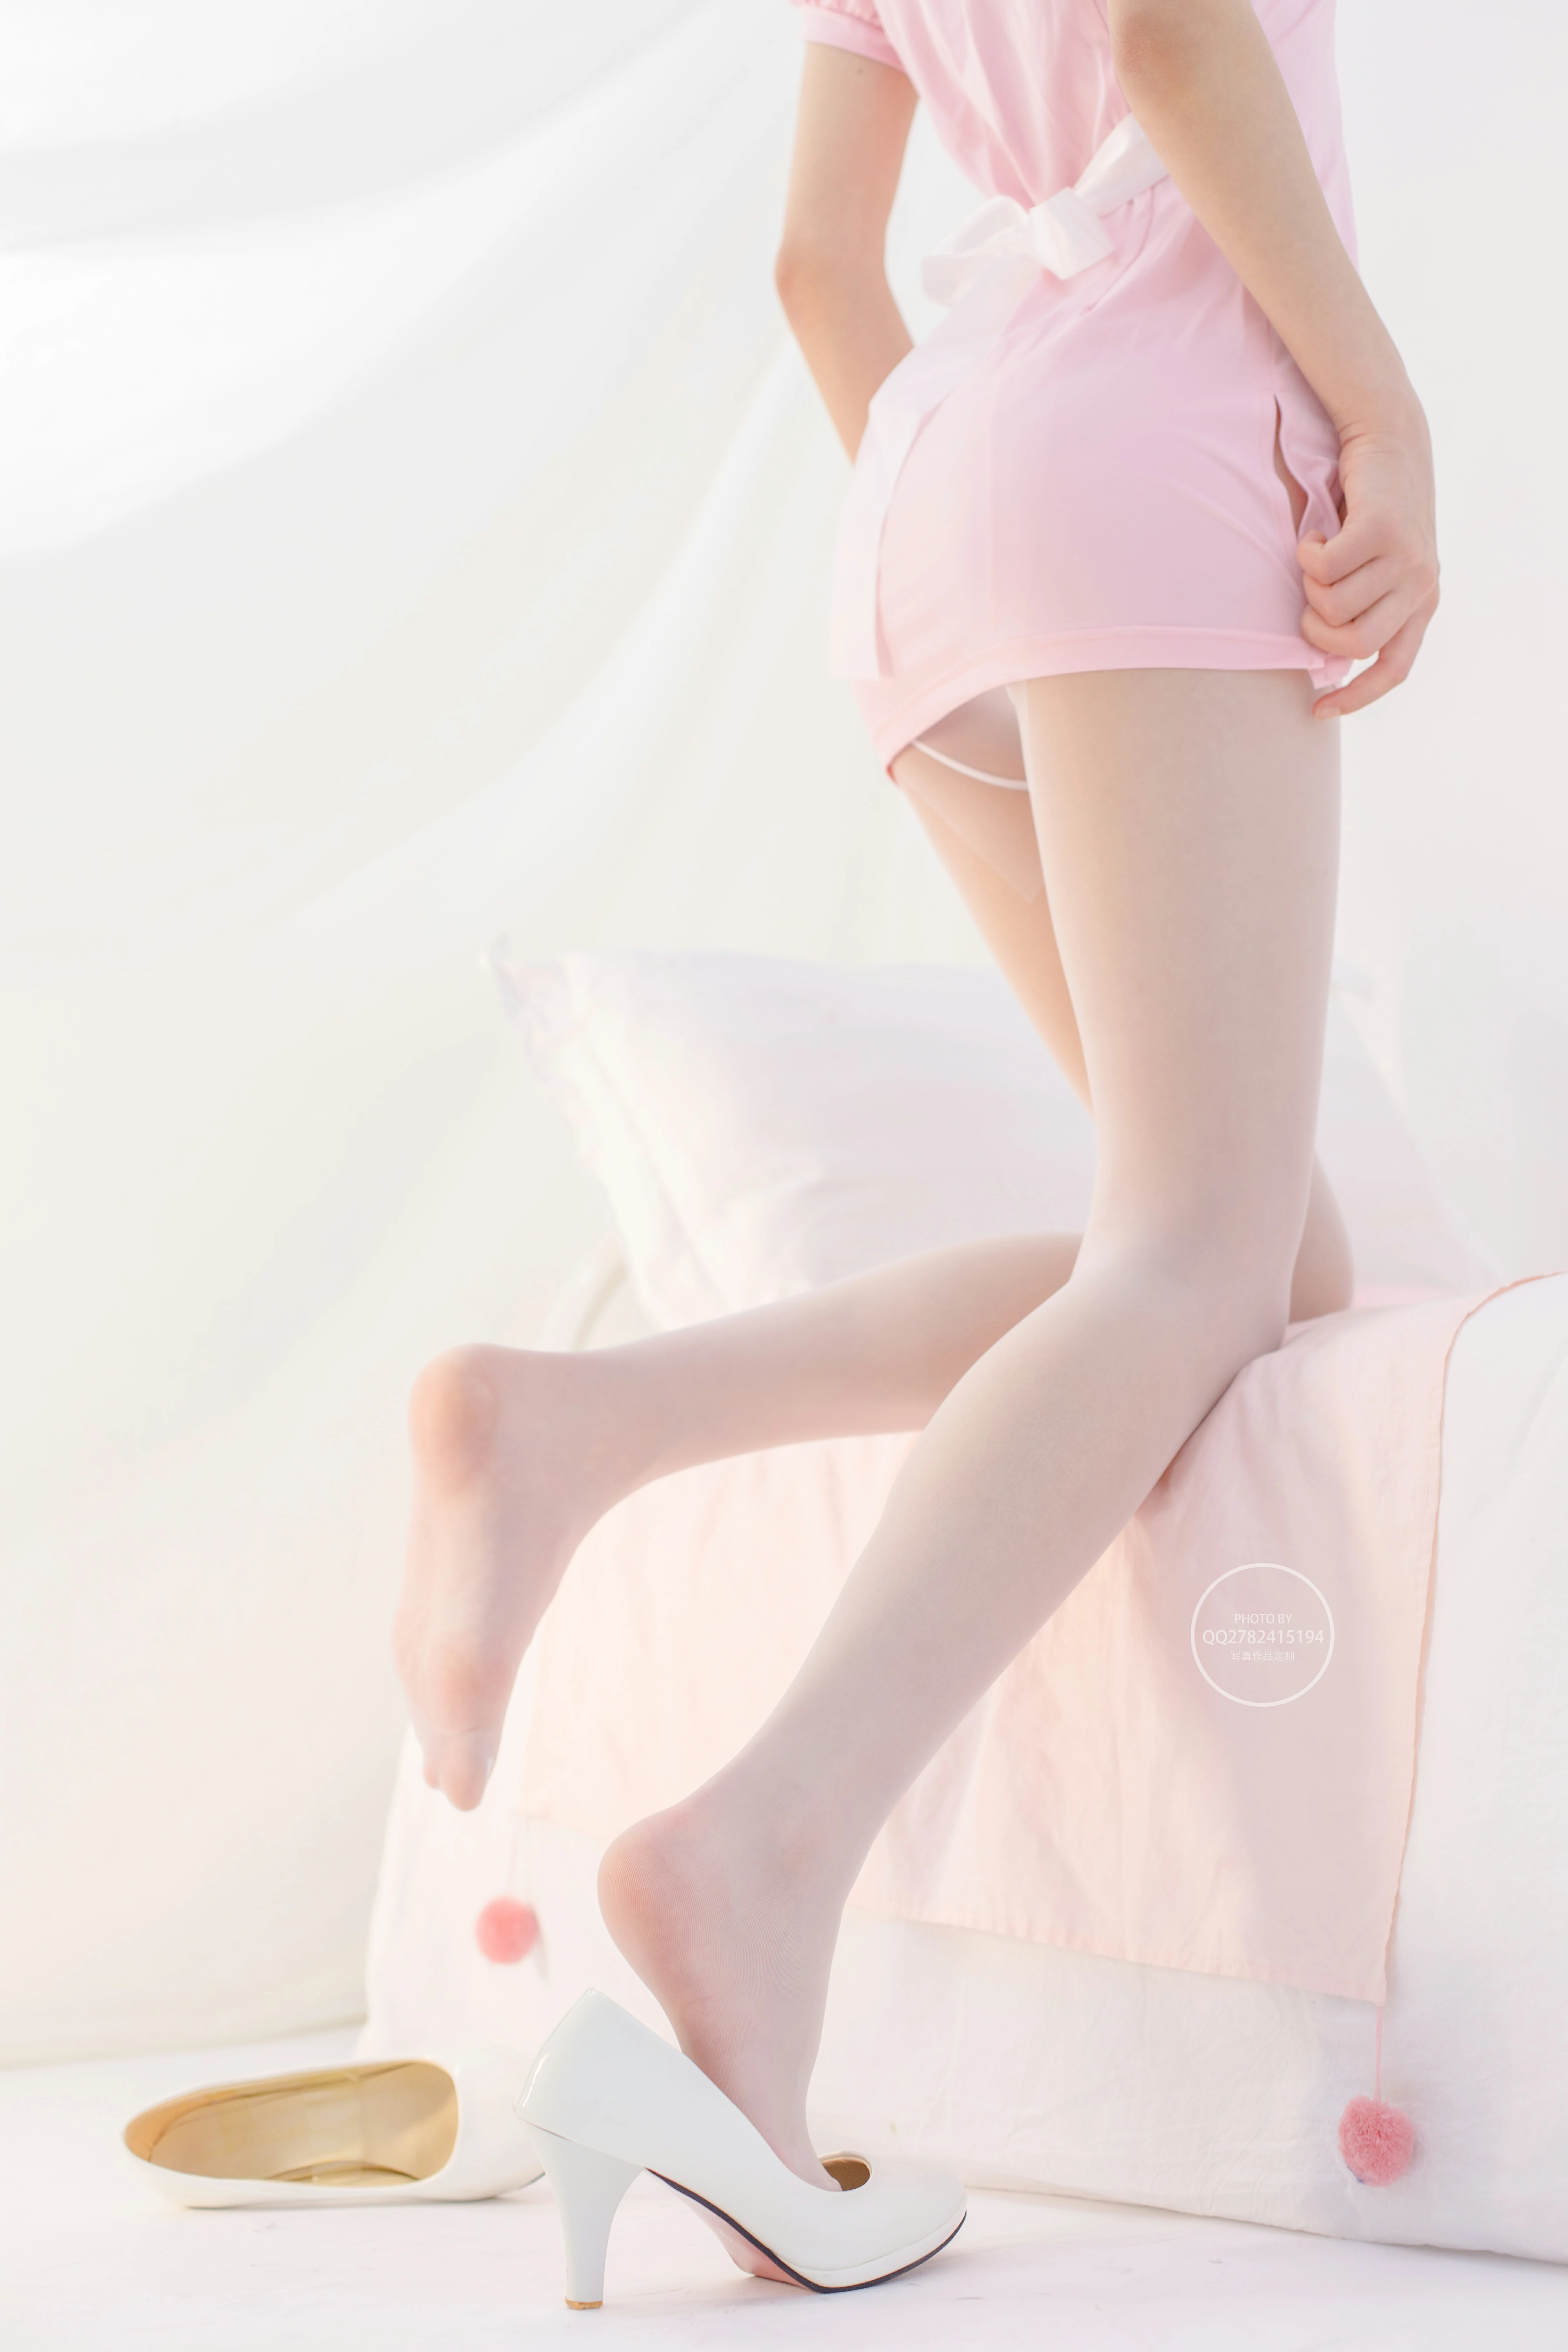 [森萝财团]有料NO.041 清纯萝莉少女 粉色护士制服裙加白色丝袜美腿性感私房写真集,